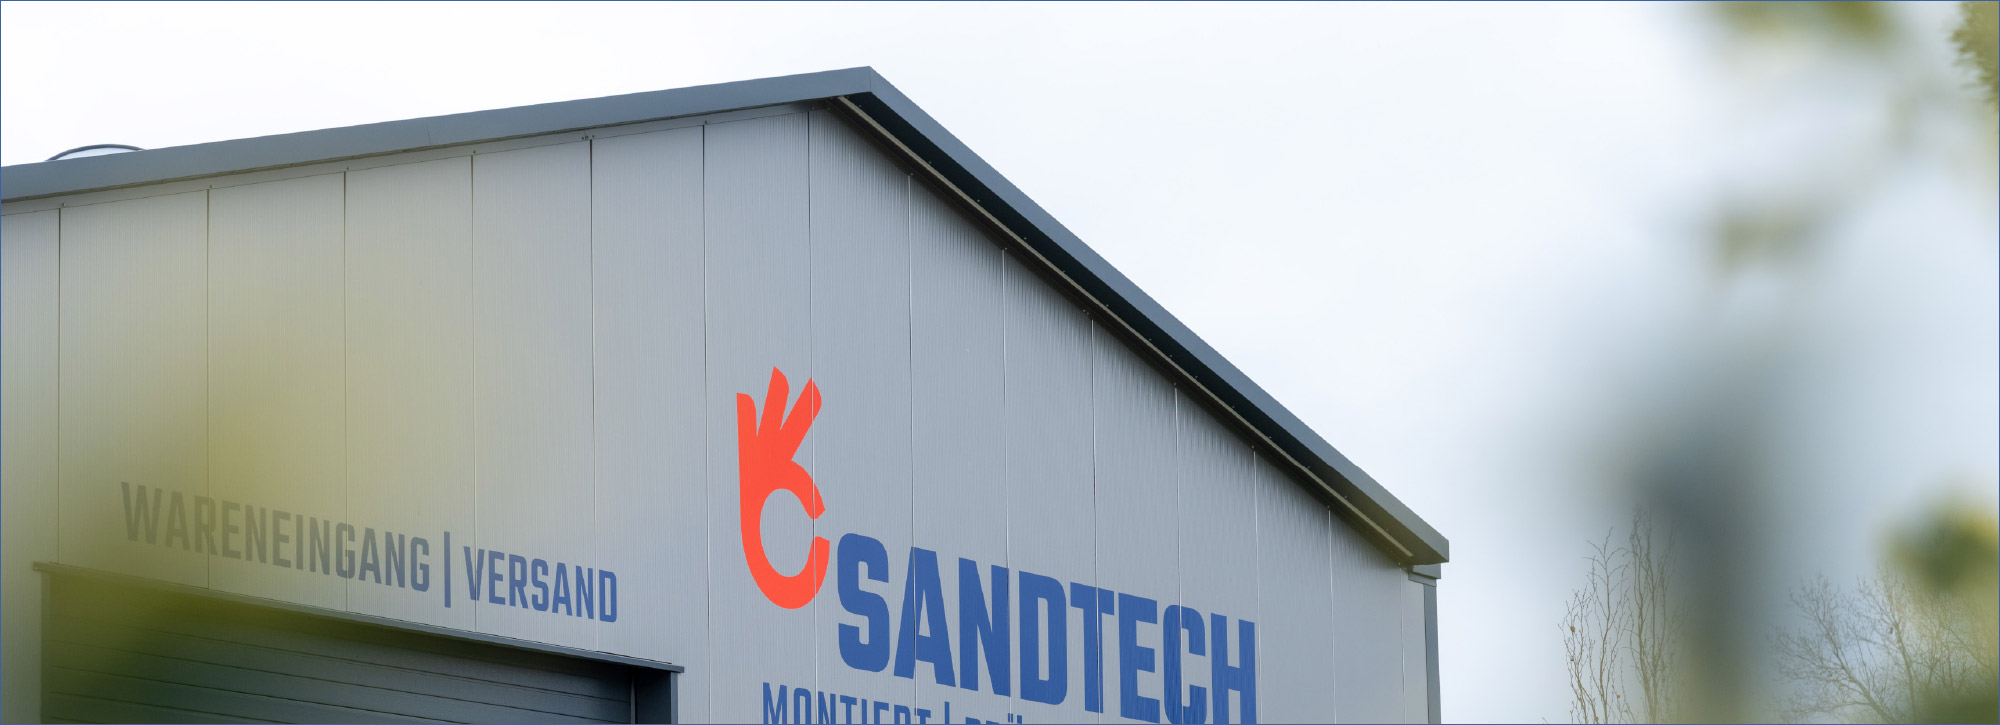 Sandtech GmbH - Leistungen